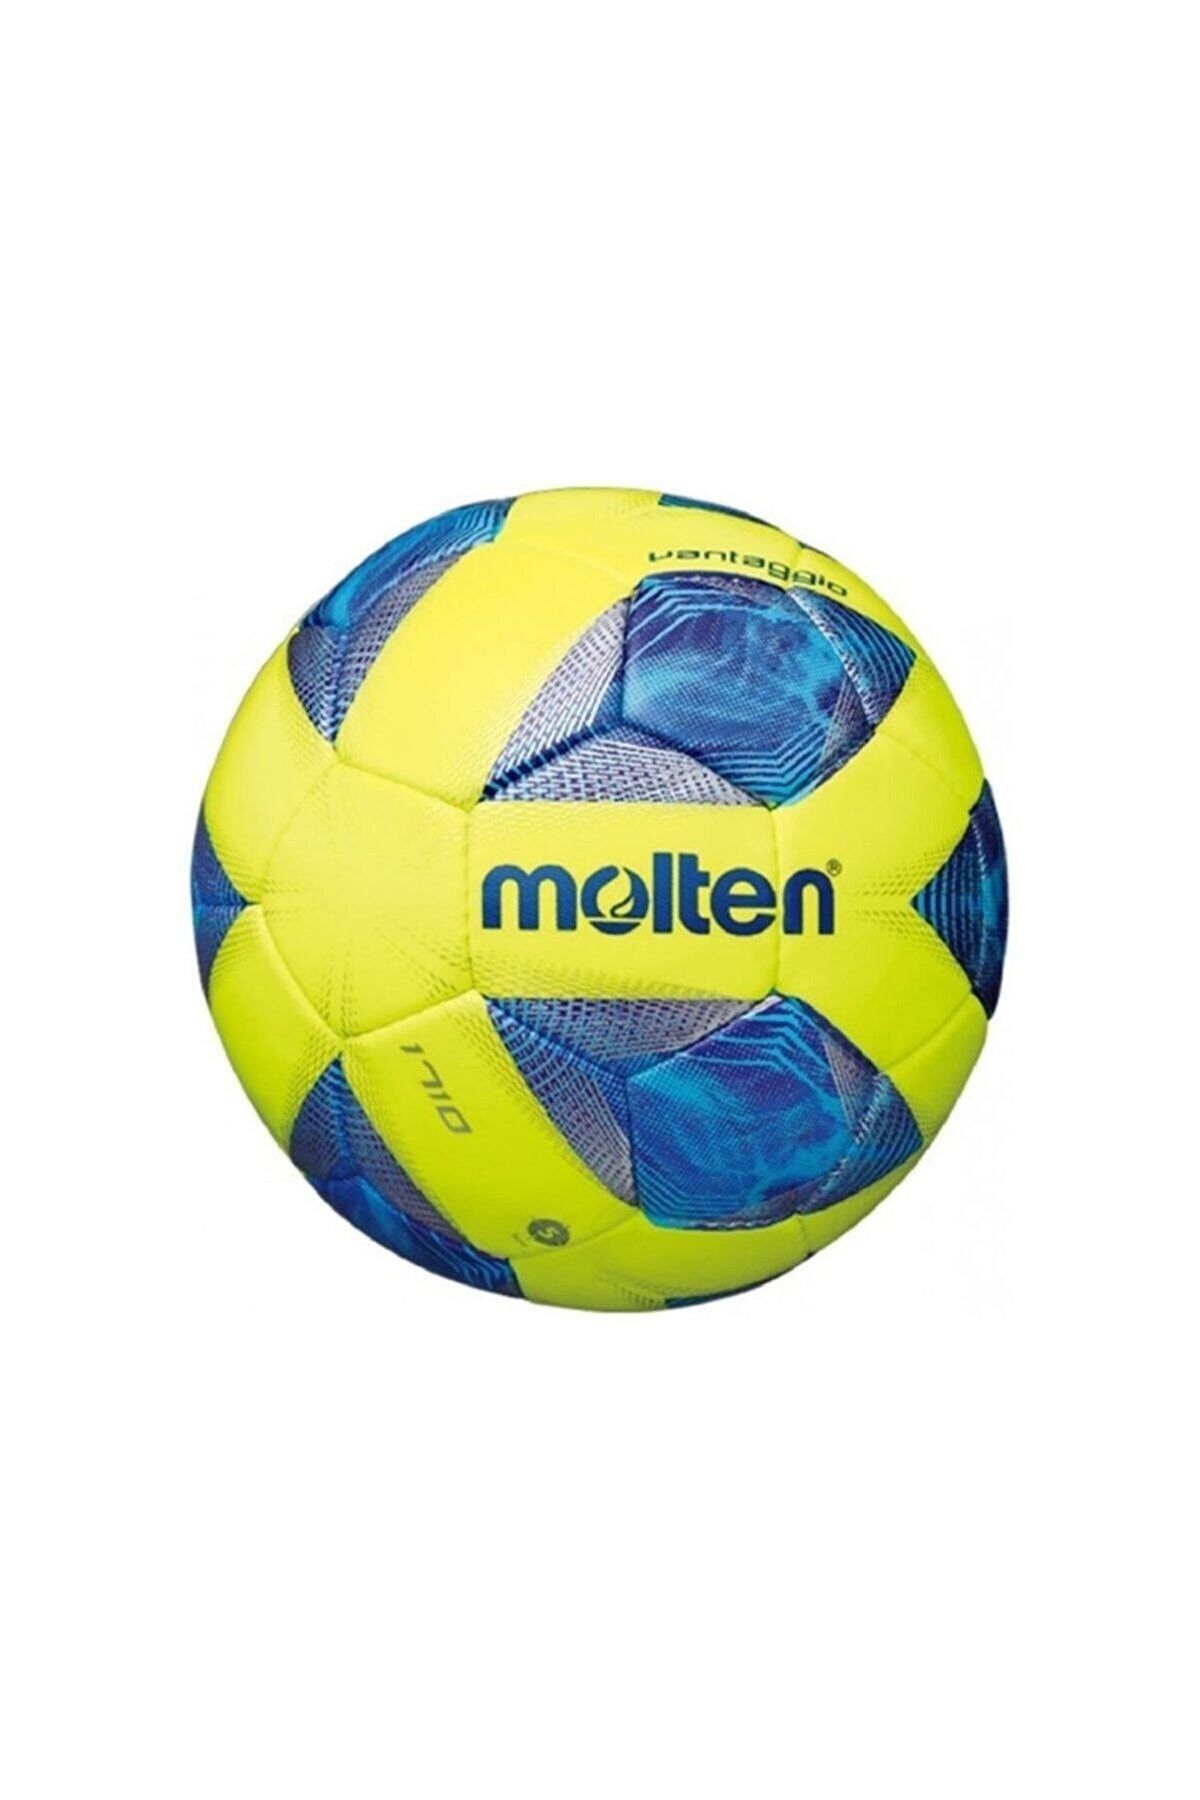 Molten F5a1710-y Unisex Futbol Topu